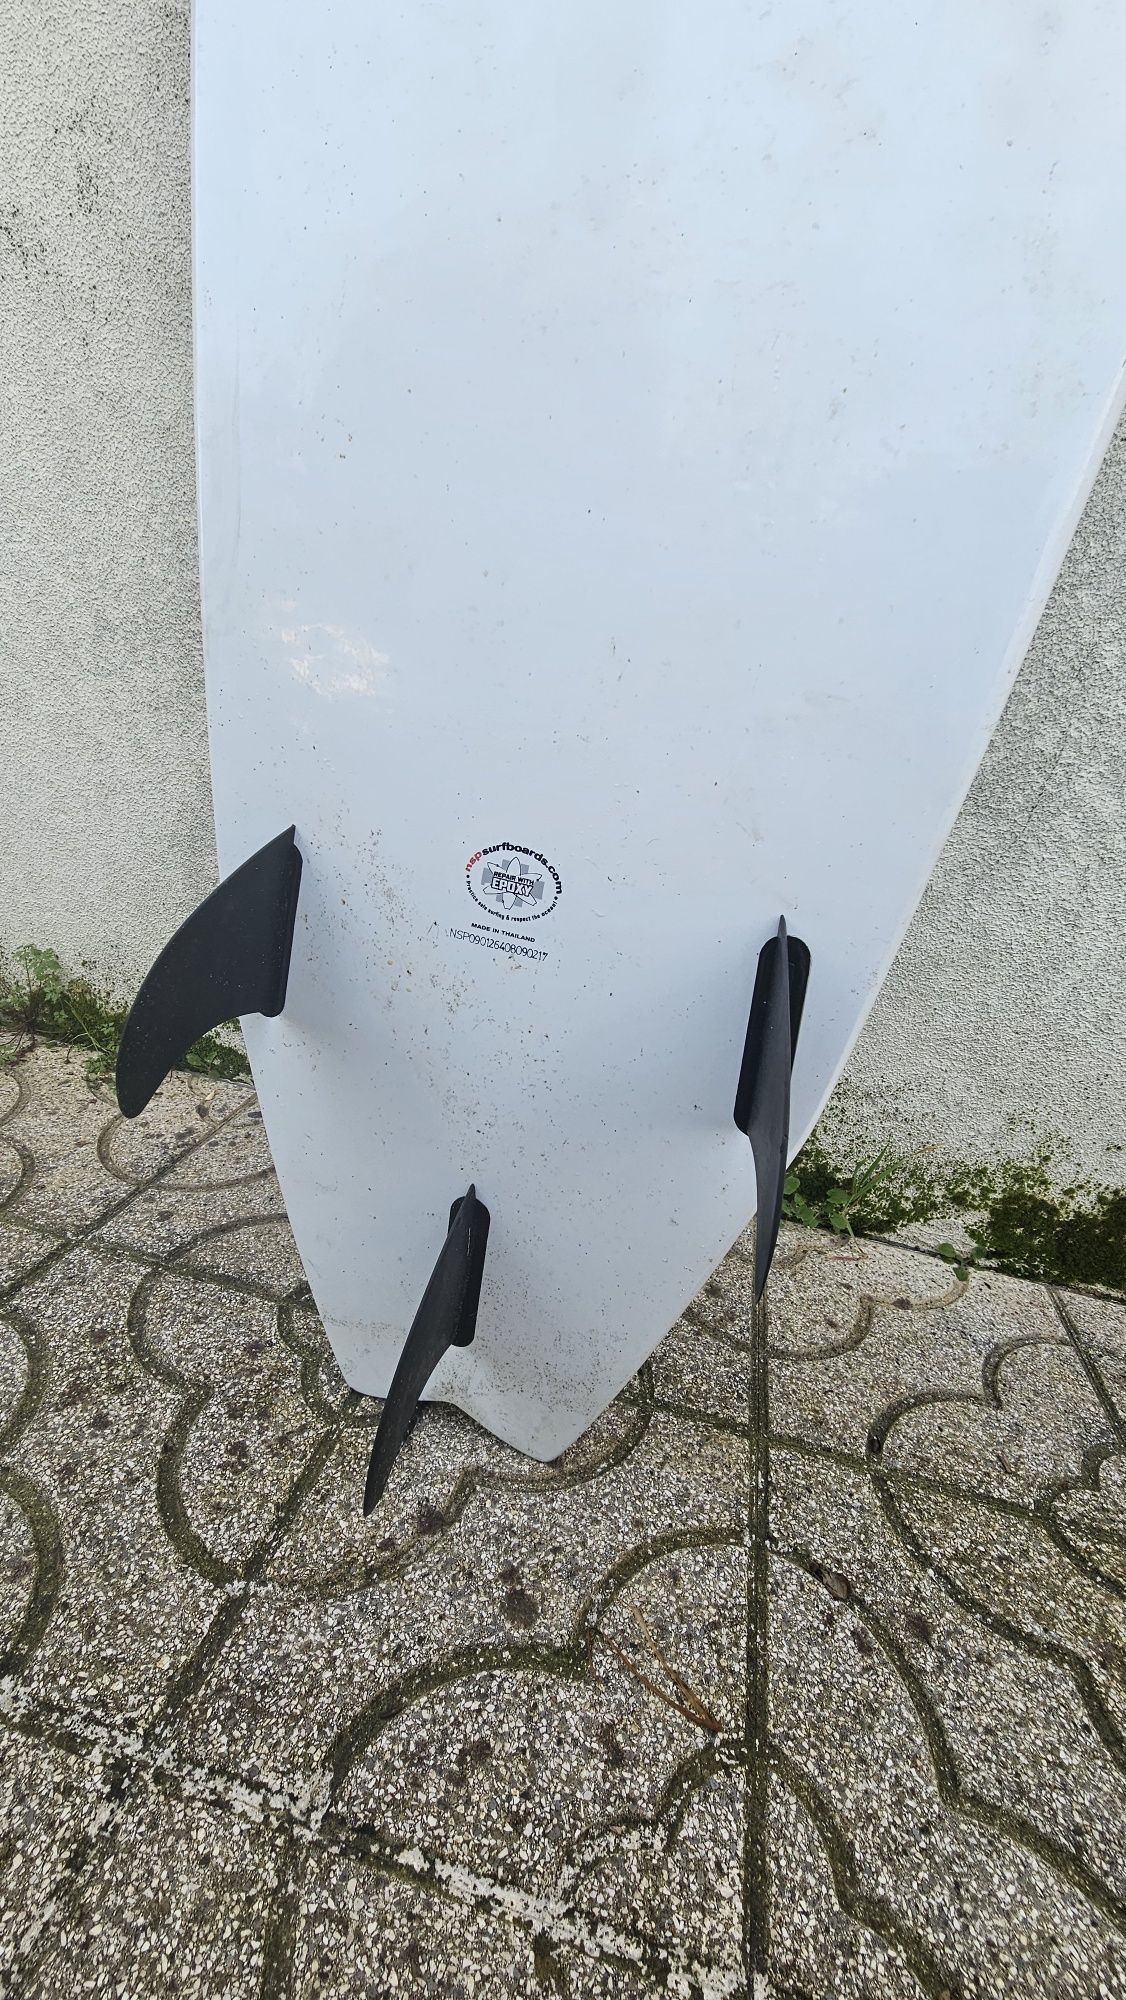 Prancha de surf 6'4 Fish NSP com saco e 3 quilhas

Vendo por falta